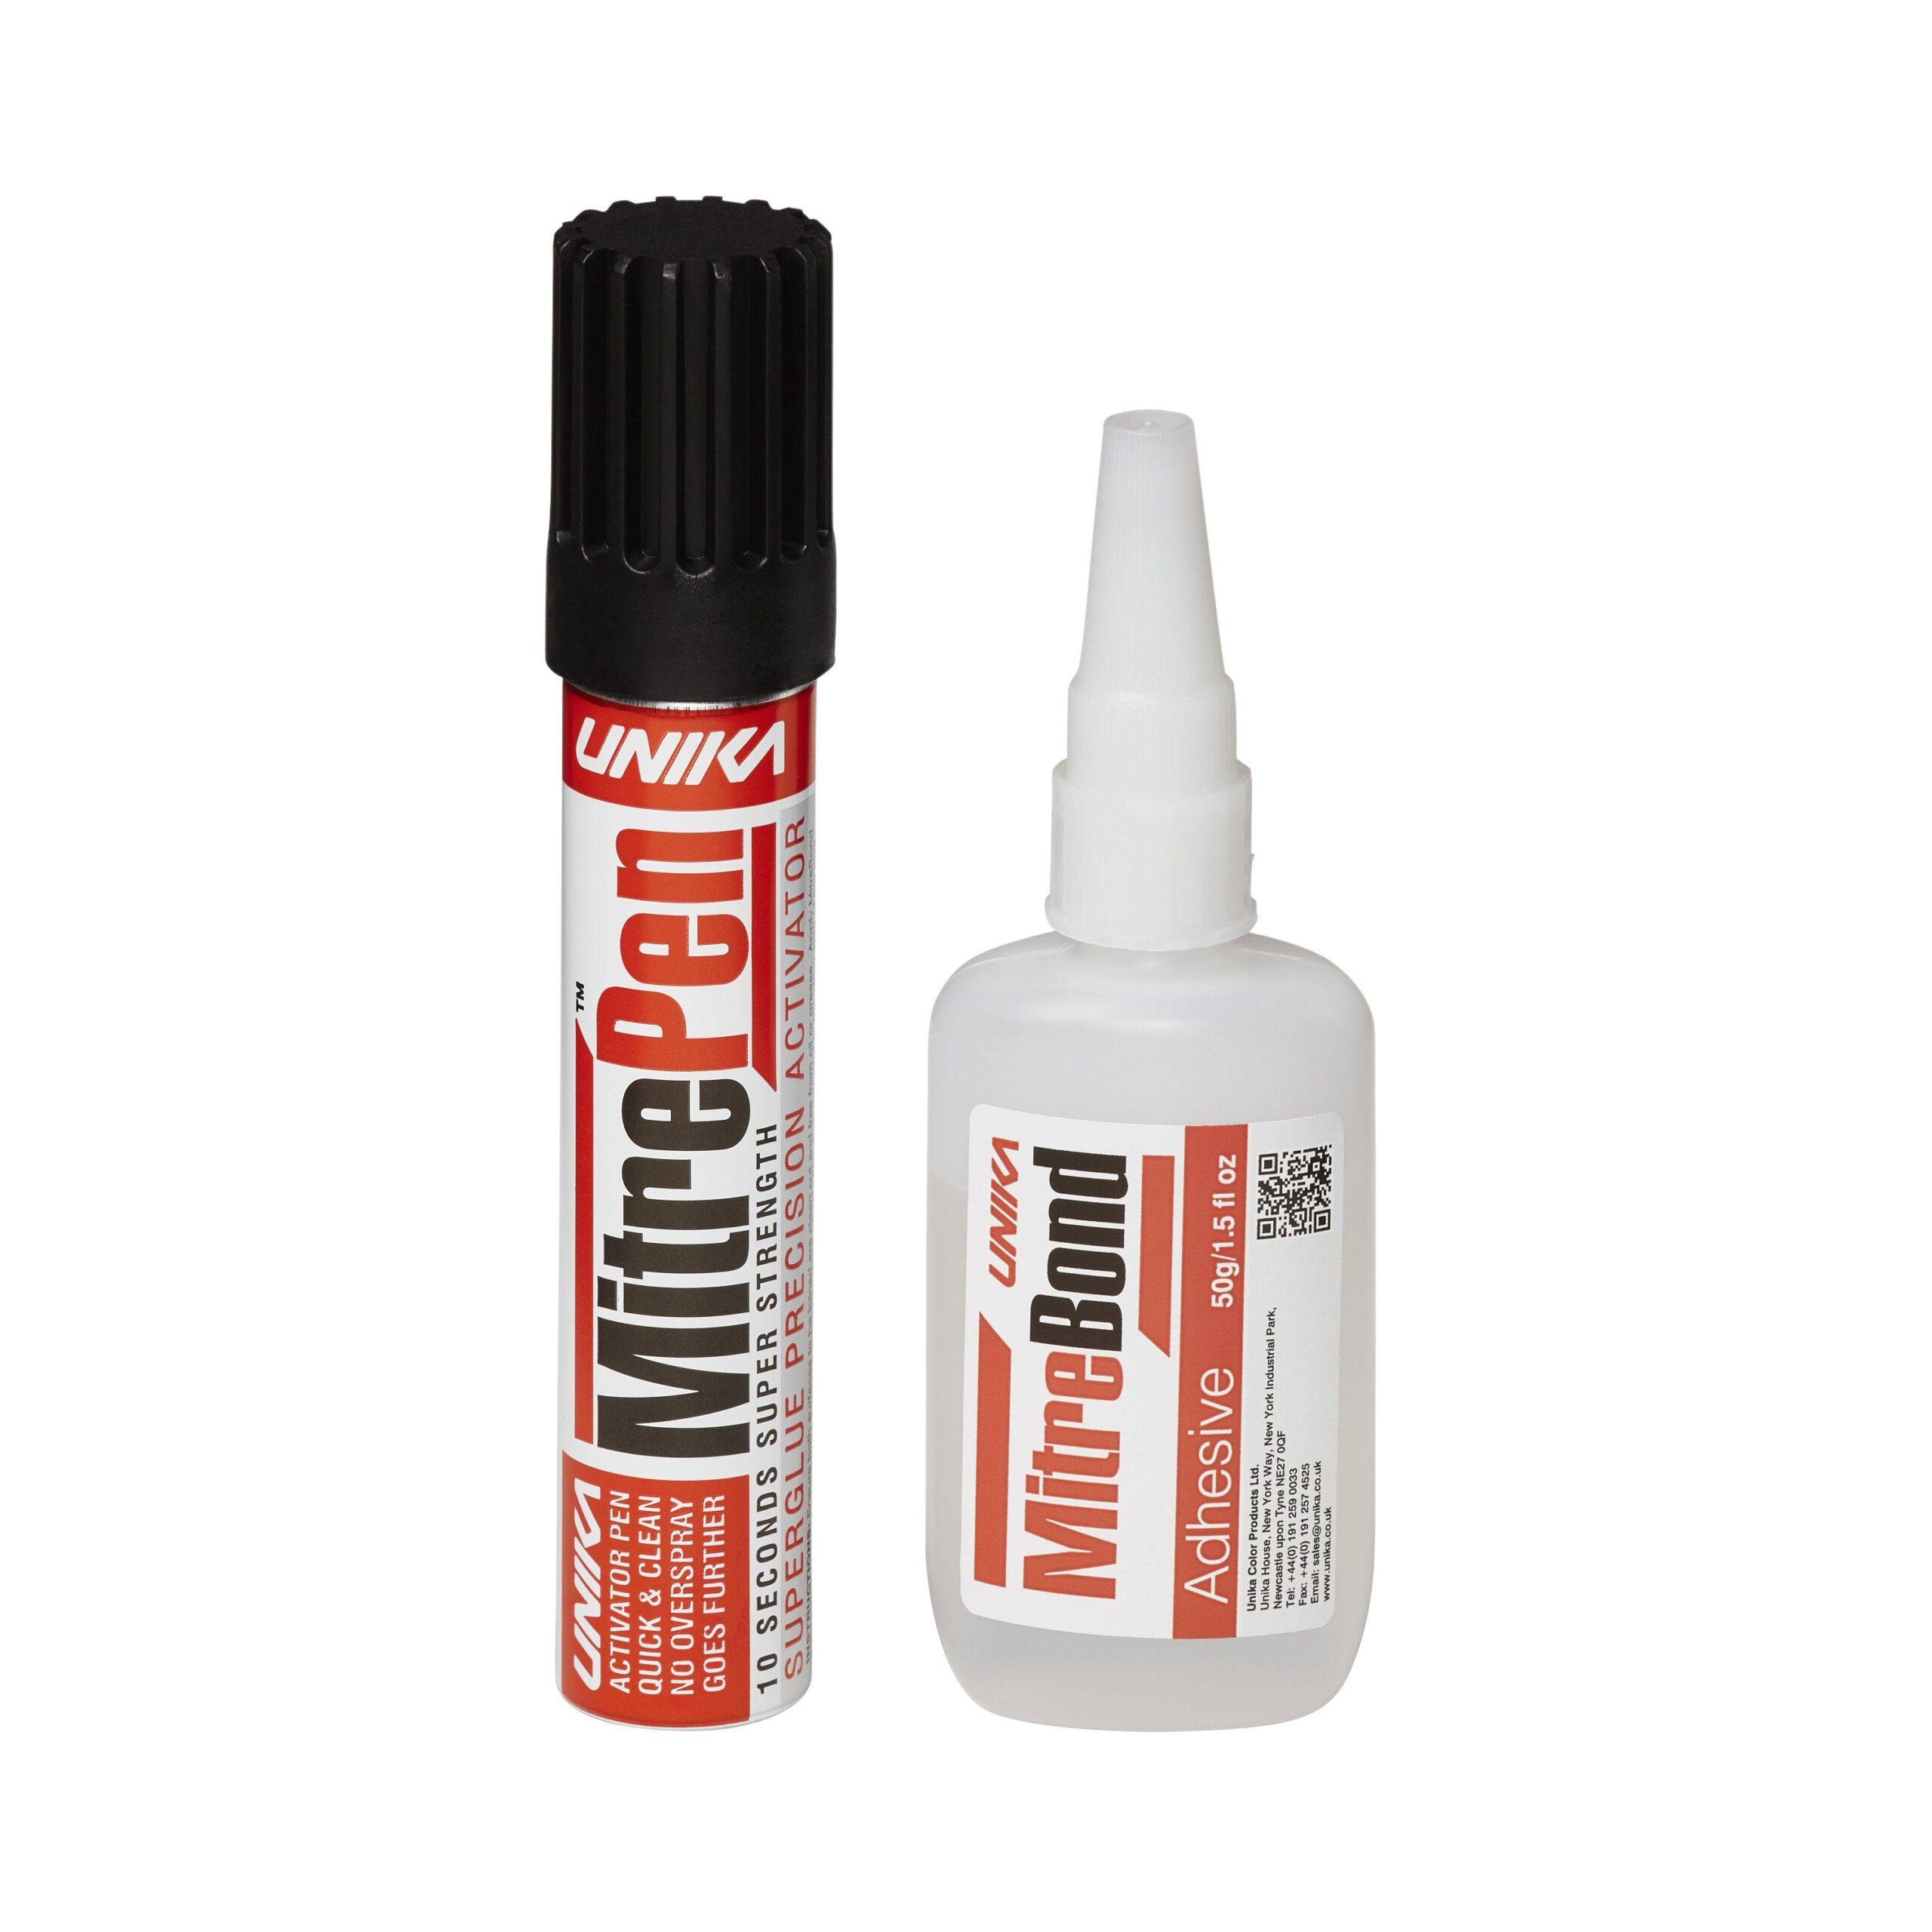 Adhesives : Glue Guns & Sticks - Cork Art Supplies Ltd